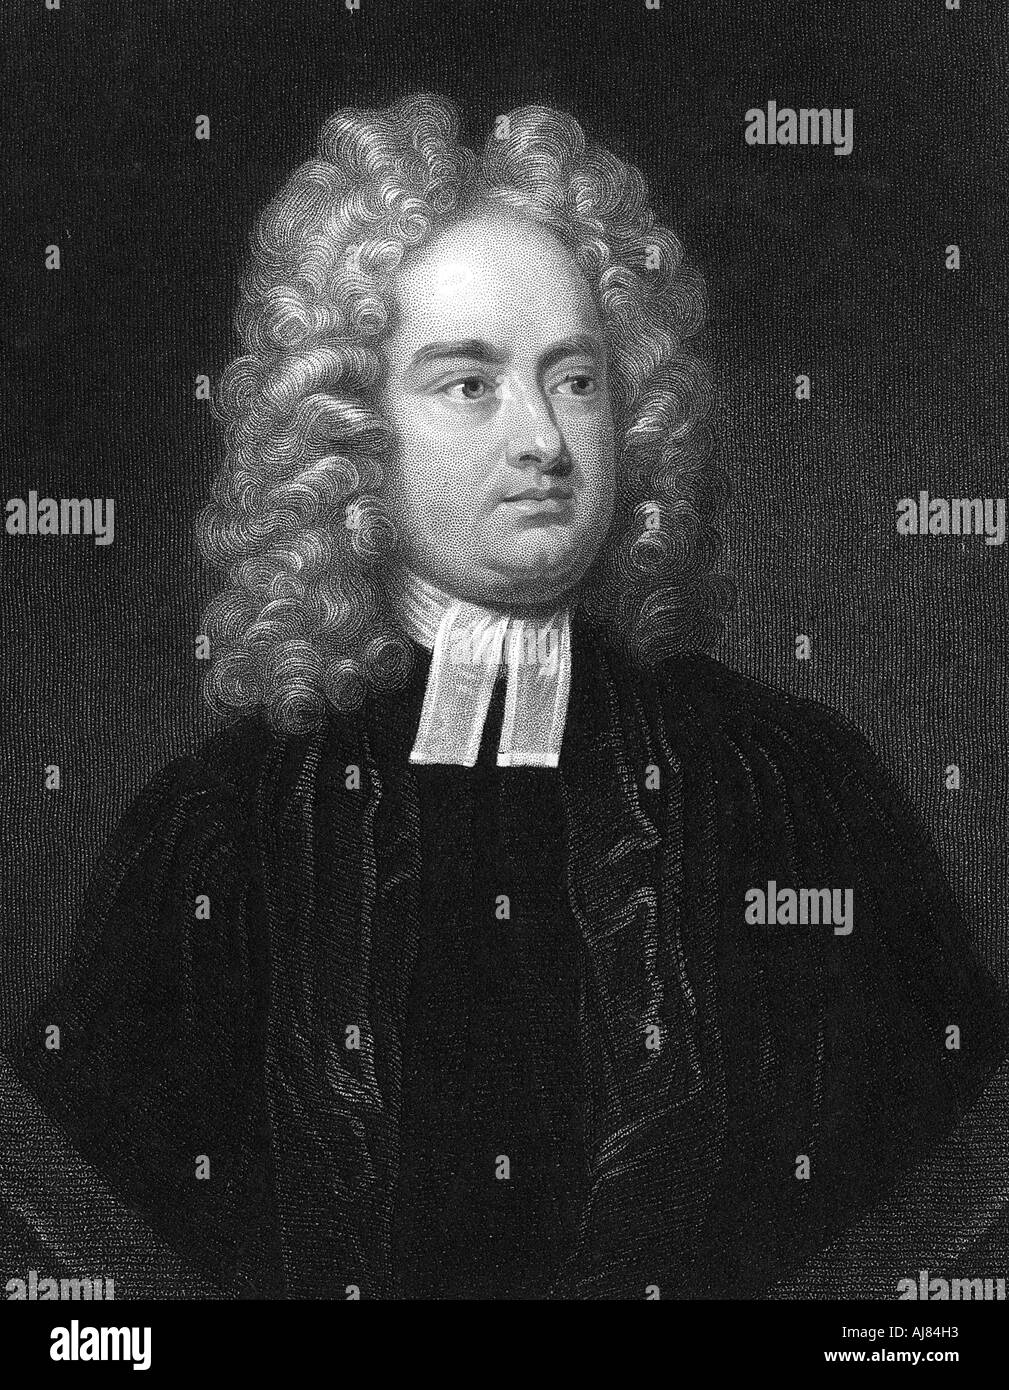 Jonathan Swift, membre du clergé anglo-irlandais, satiriste et poète. Artiste : Inconnu Banque D'Images